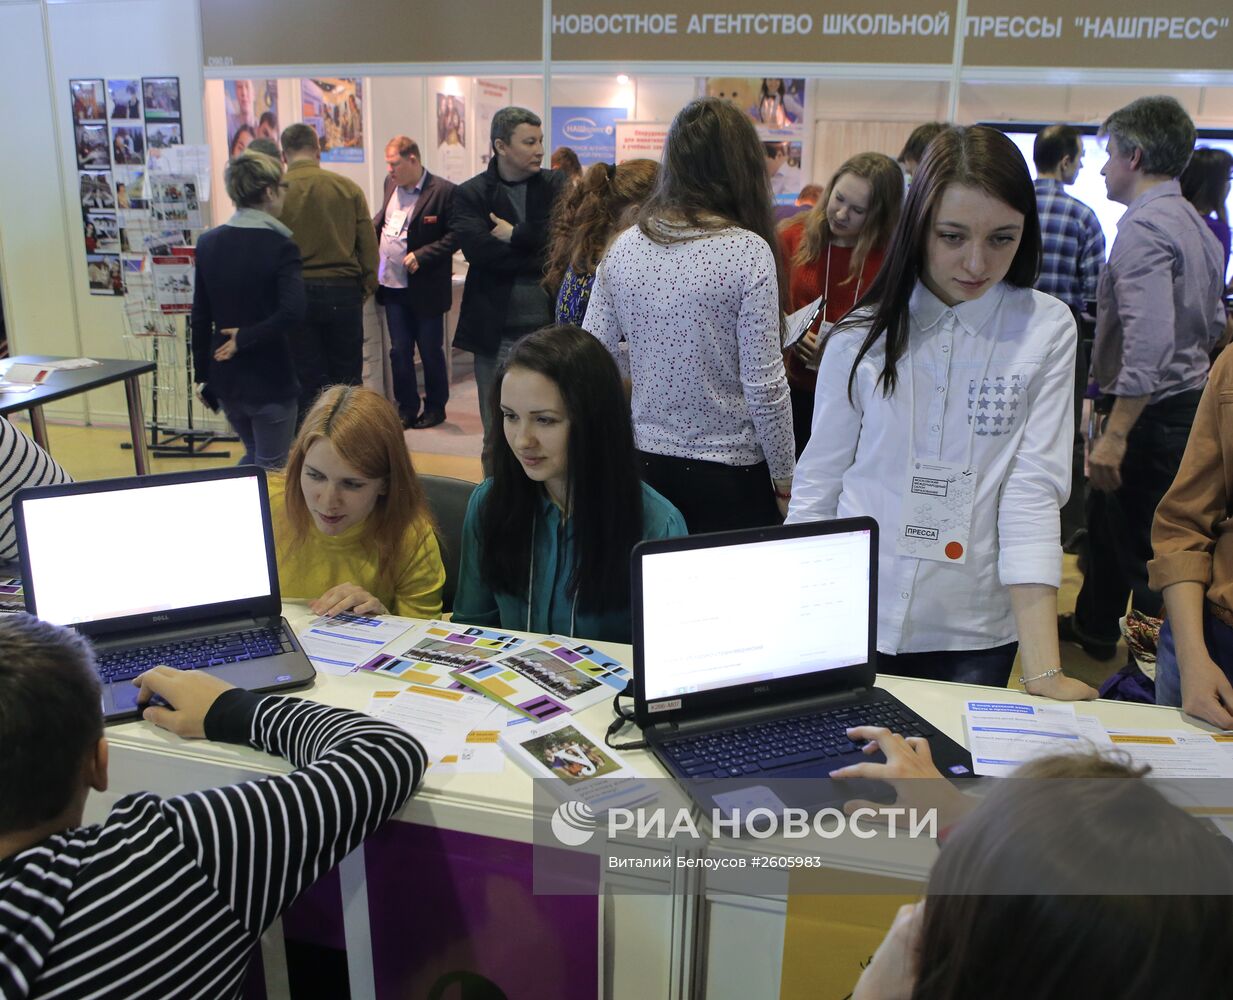 Московский международный салон образования